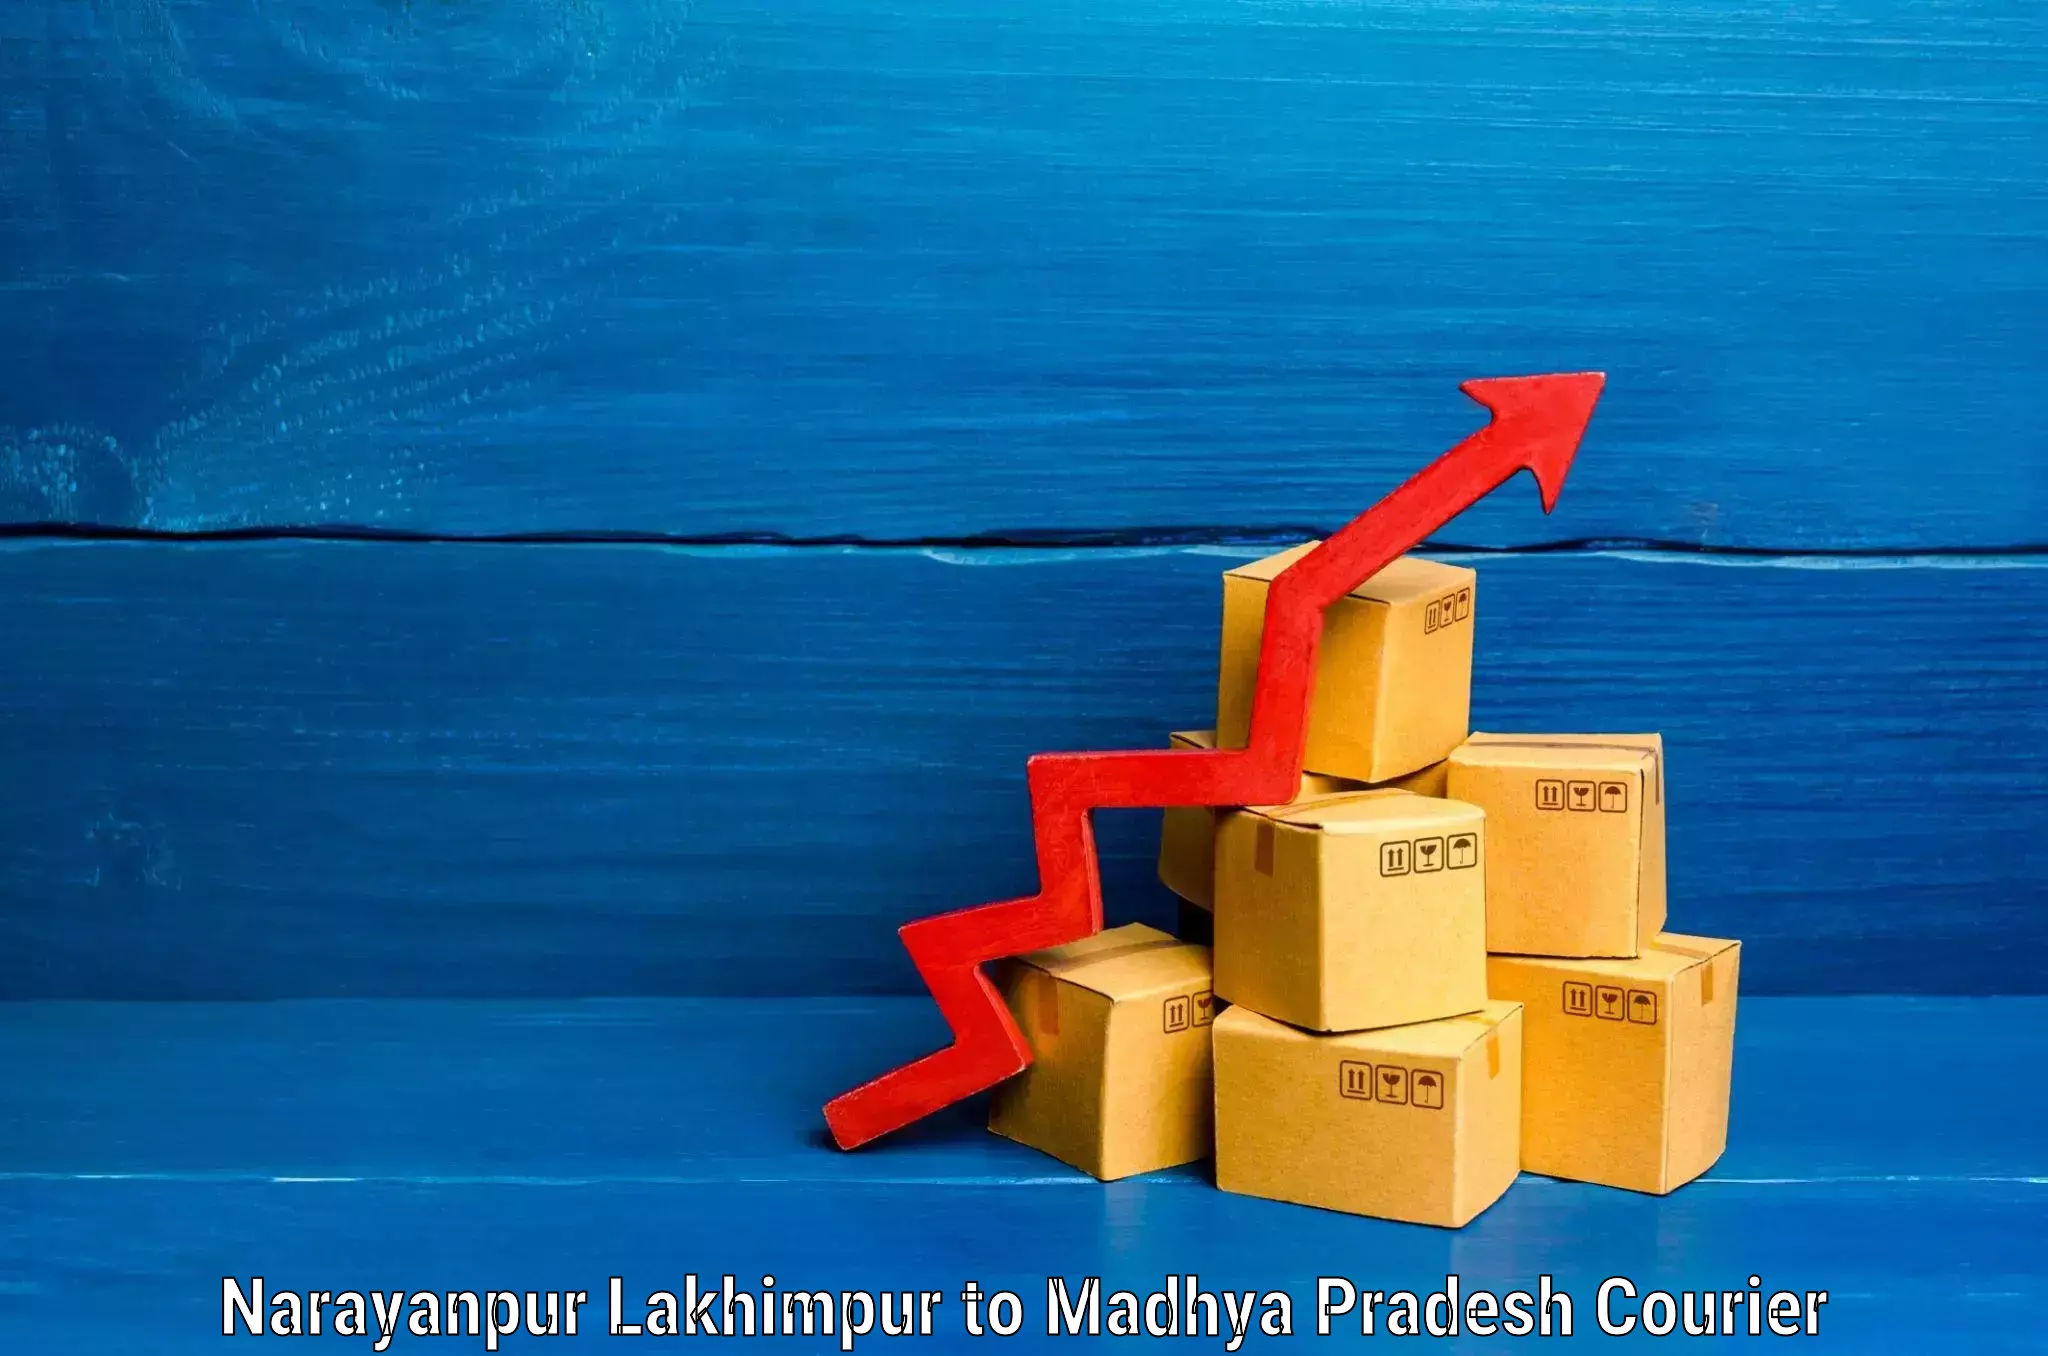 Luggage transfer service Narayanpur Lakhimpur to Madhya Pradesh